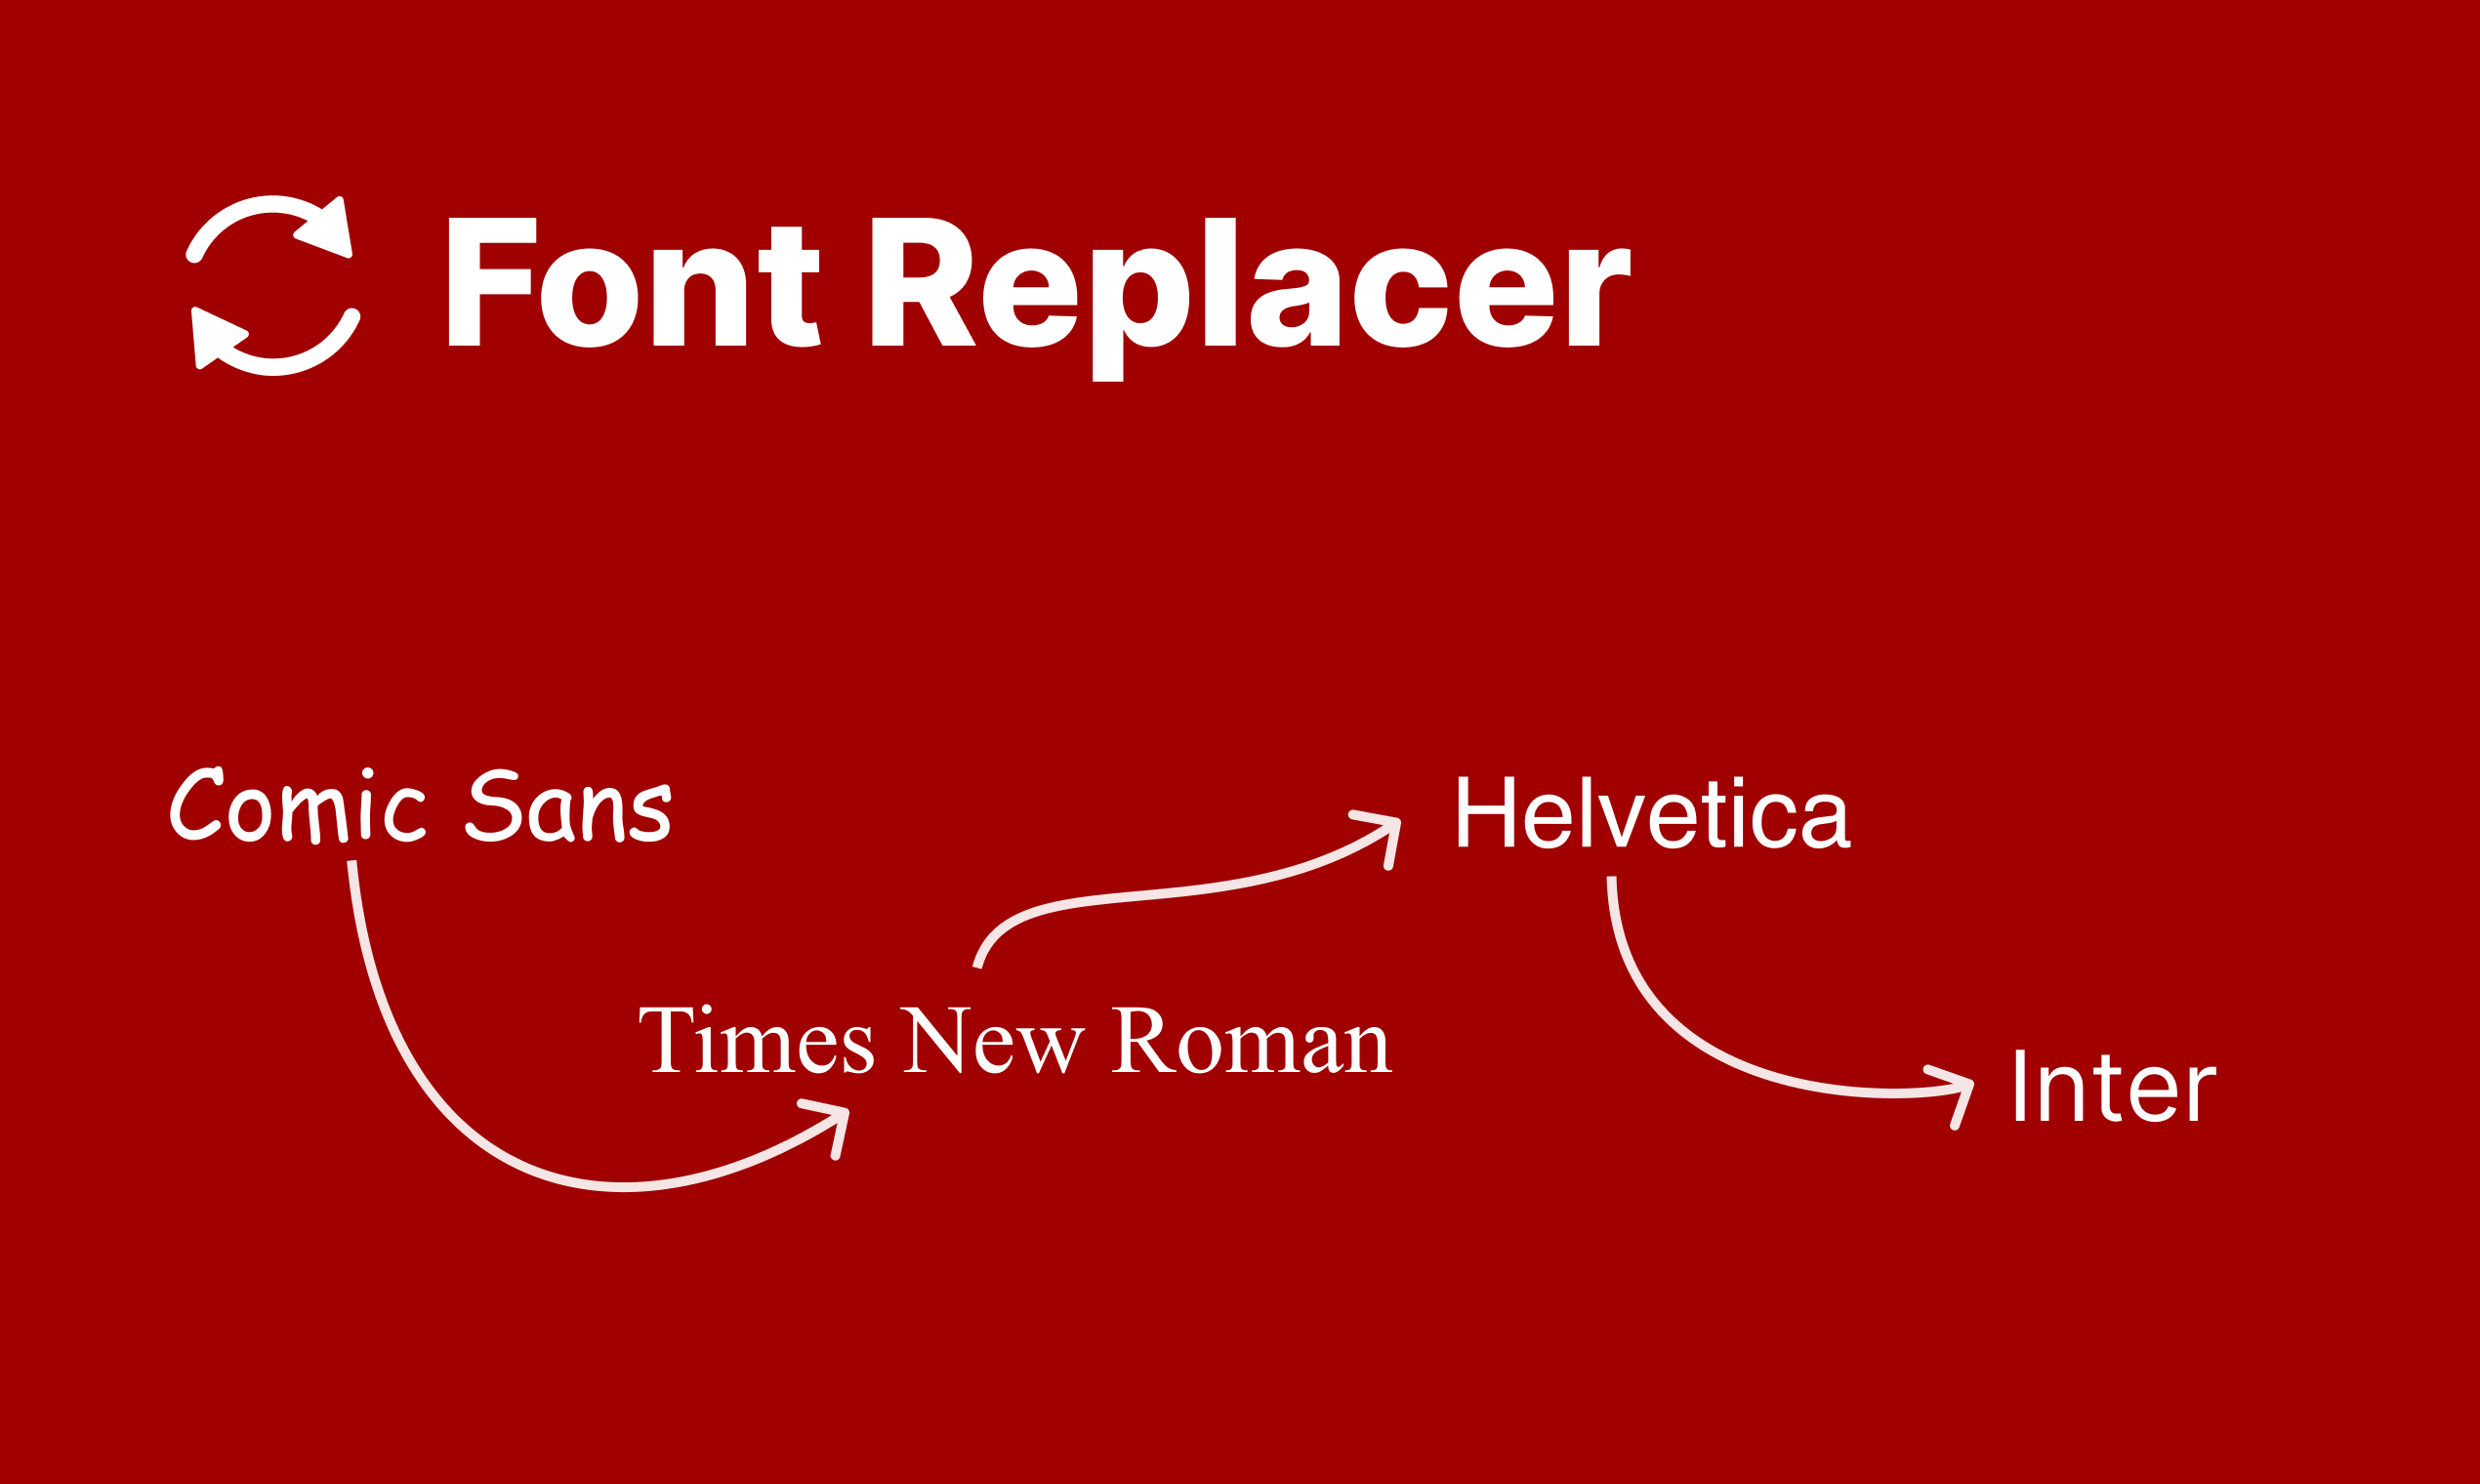 all figma fonts